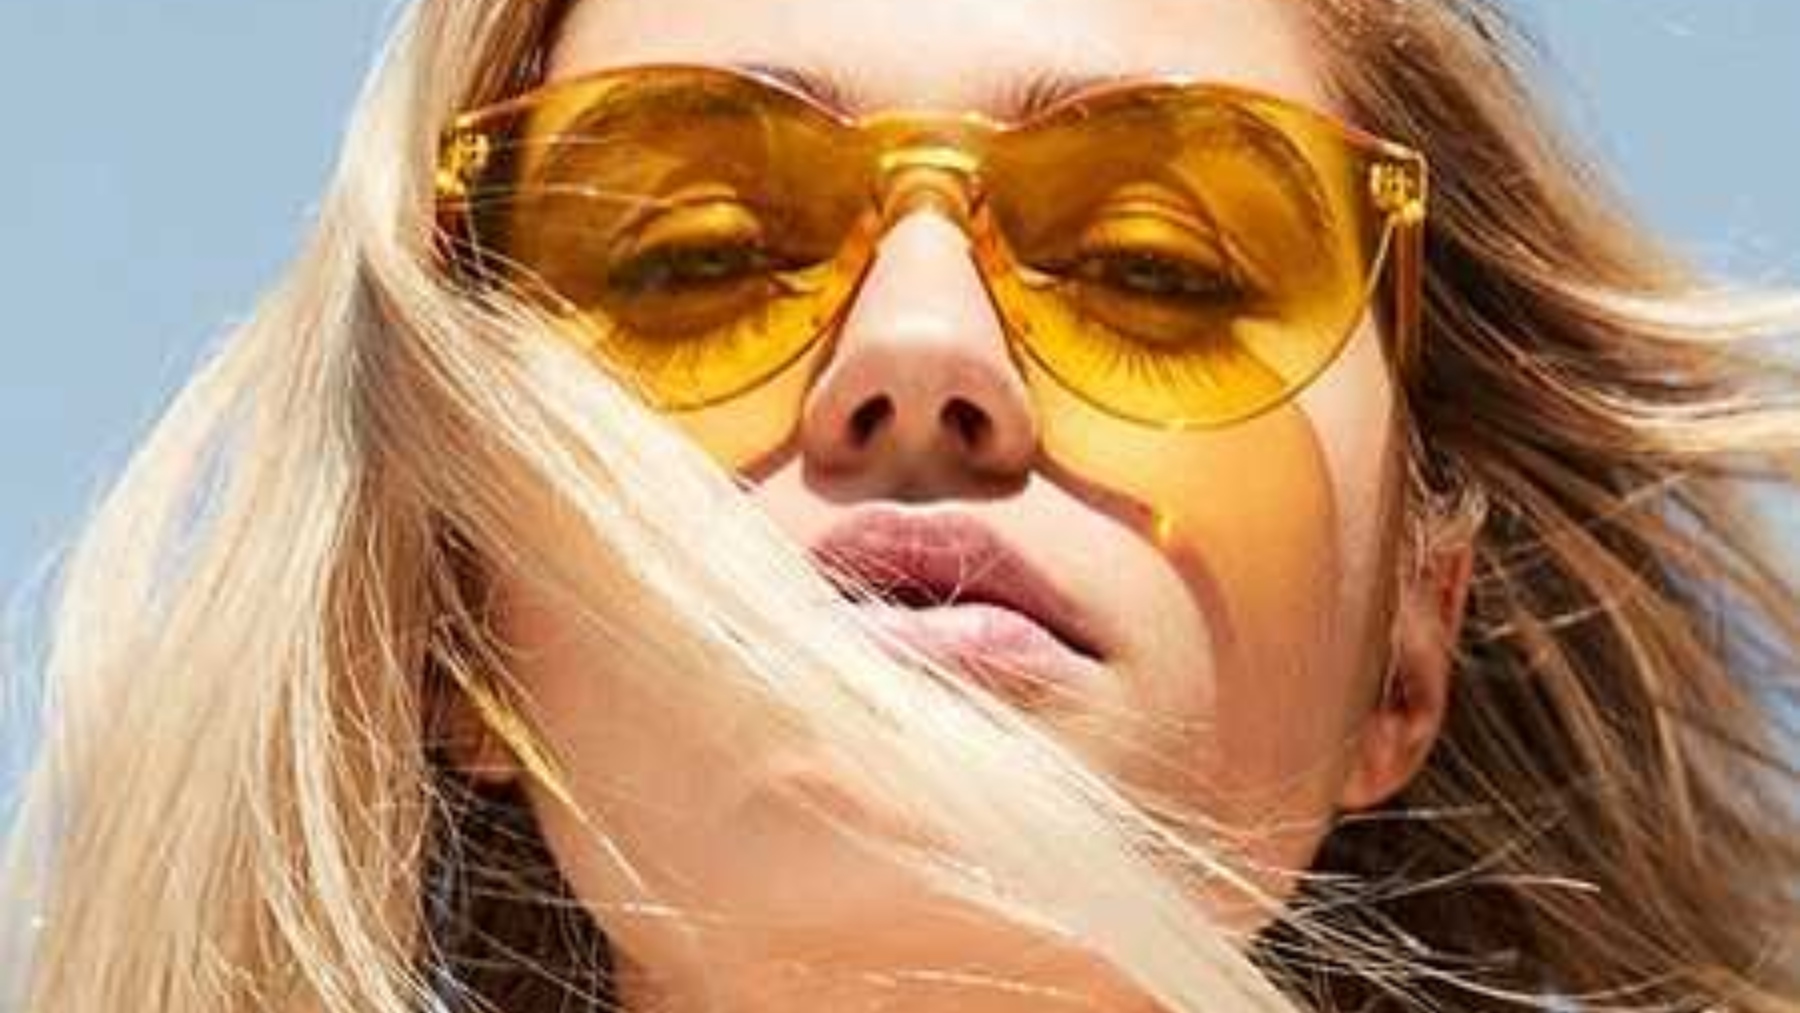 Las gafas de sol de moda tienen el cristal amarillo